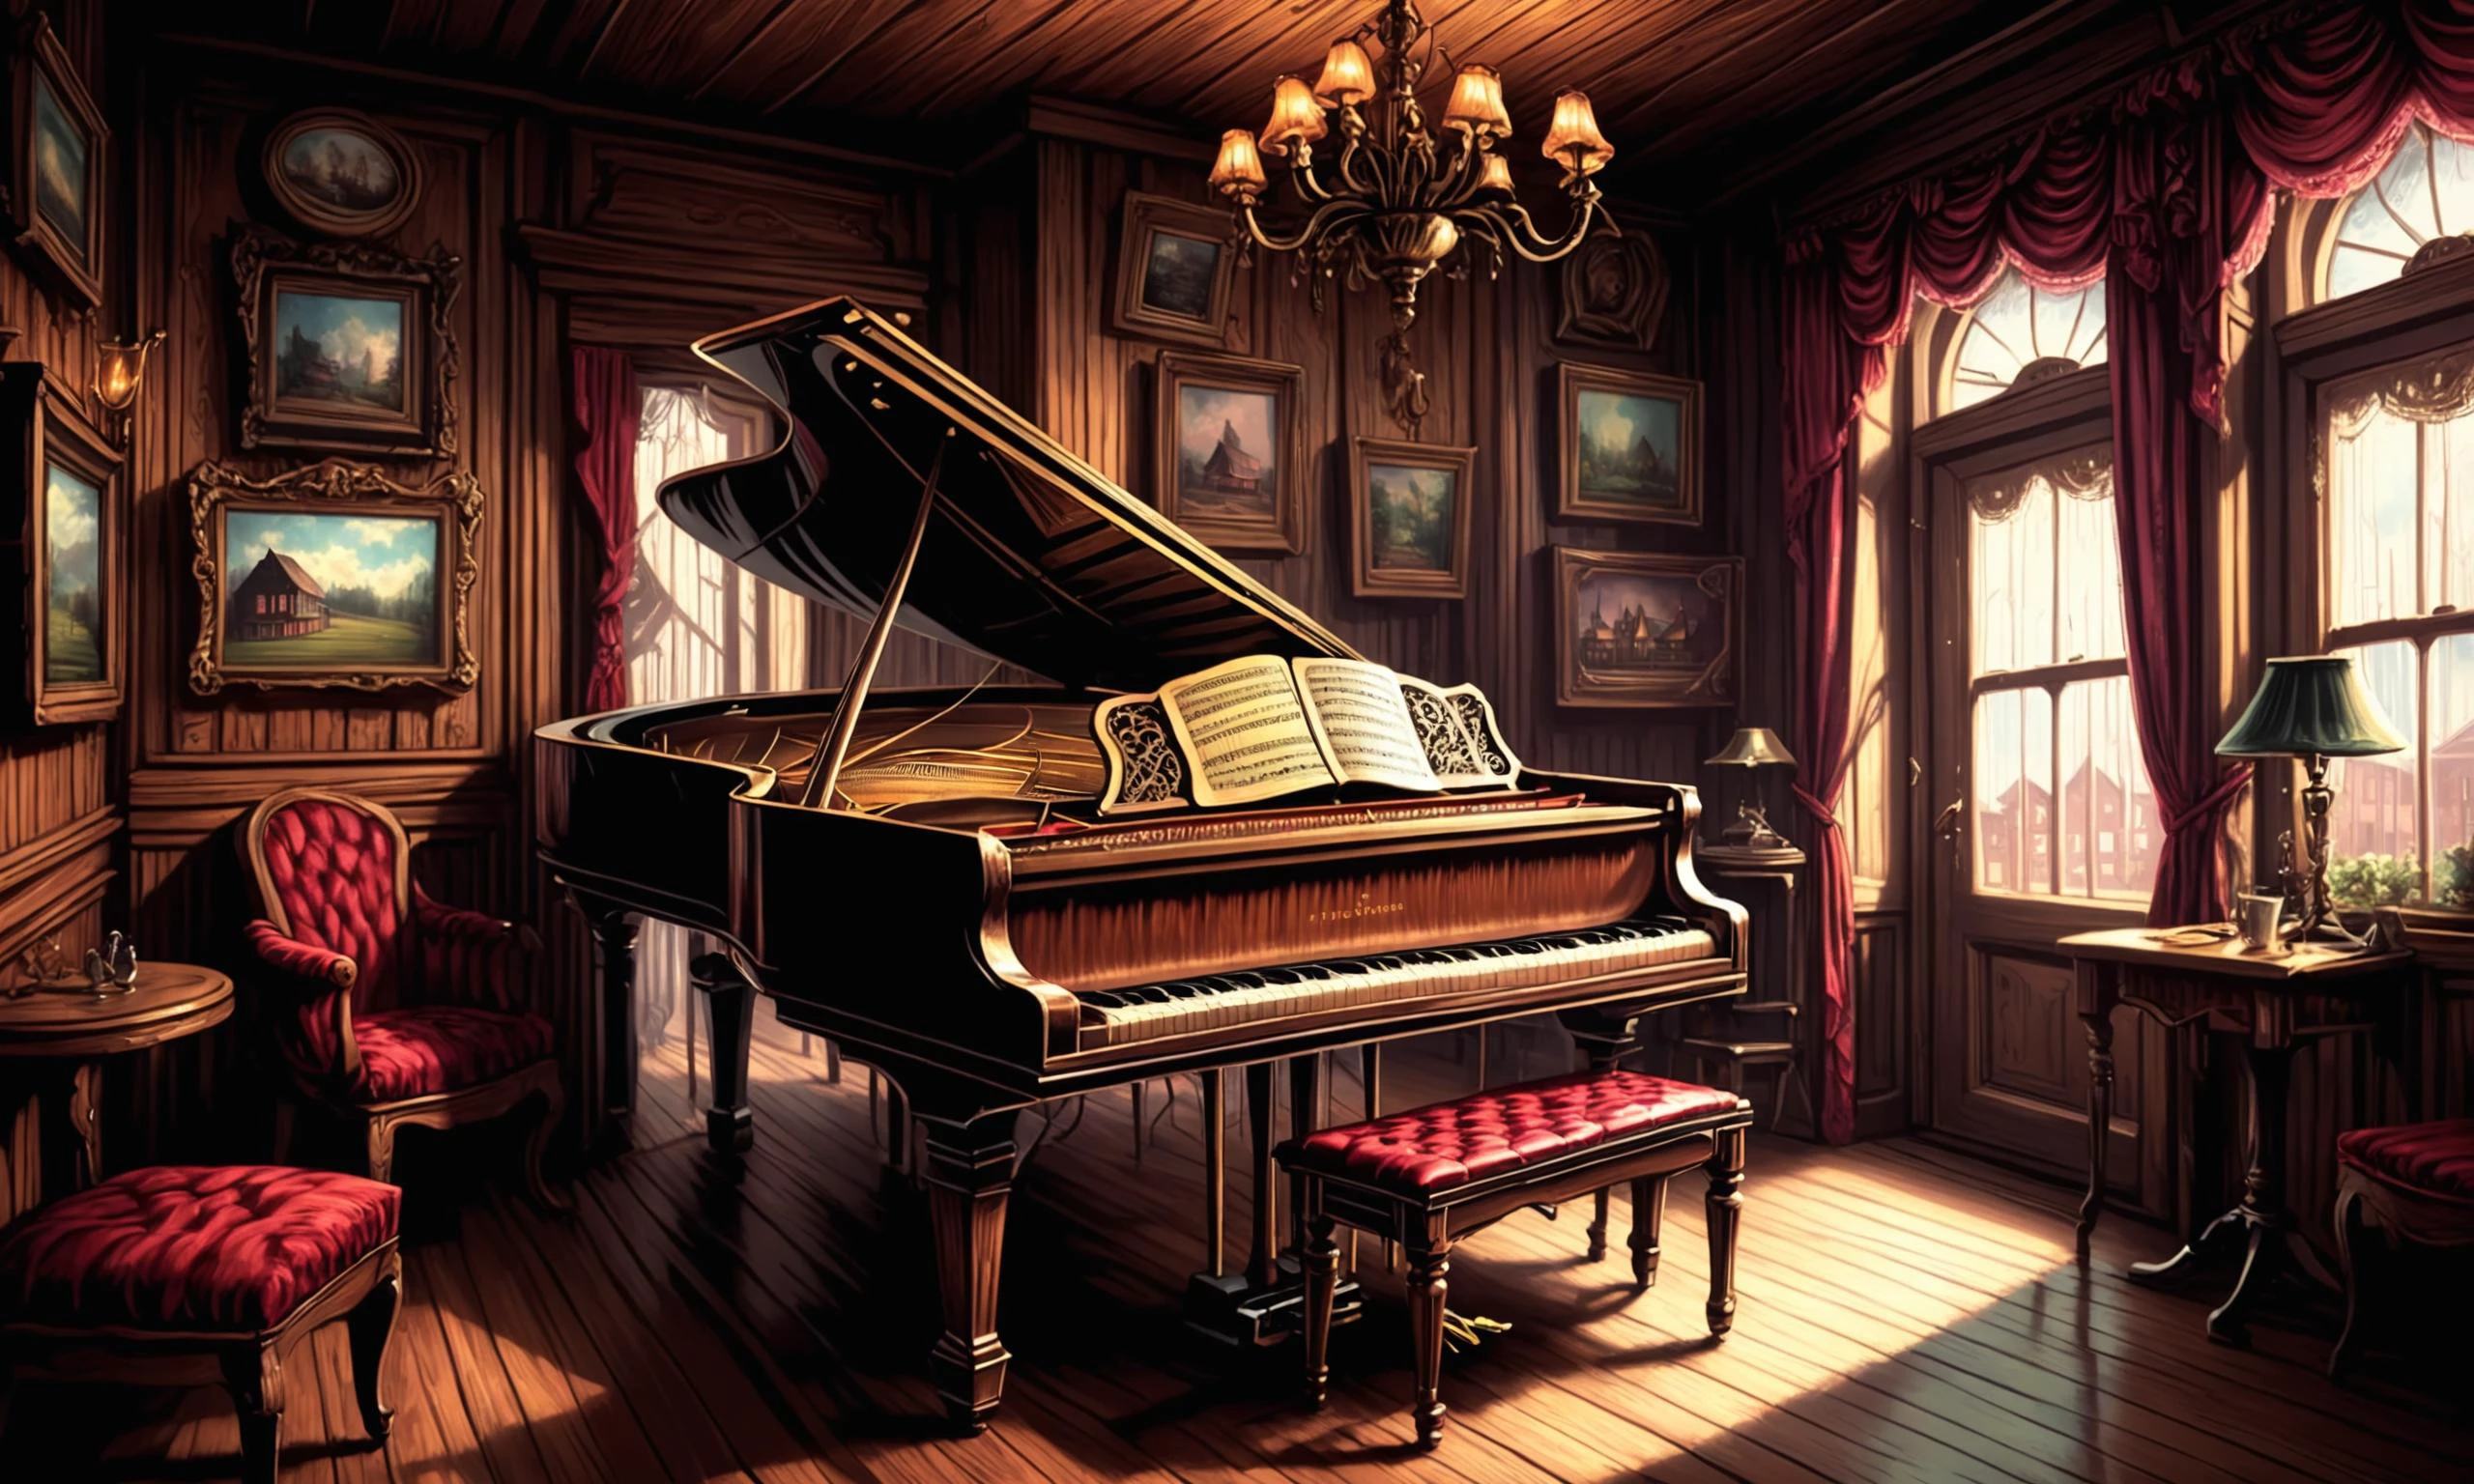 술집에서 Tinkling 피아노 음악을 아름답게 상세하게 그린 디지털 일러스트레이션, 프레컬러